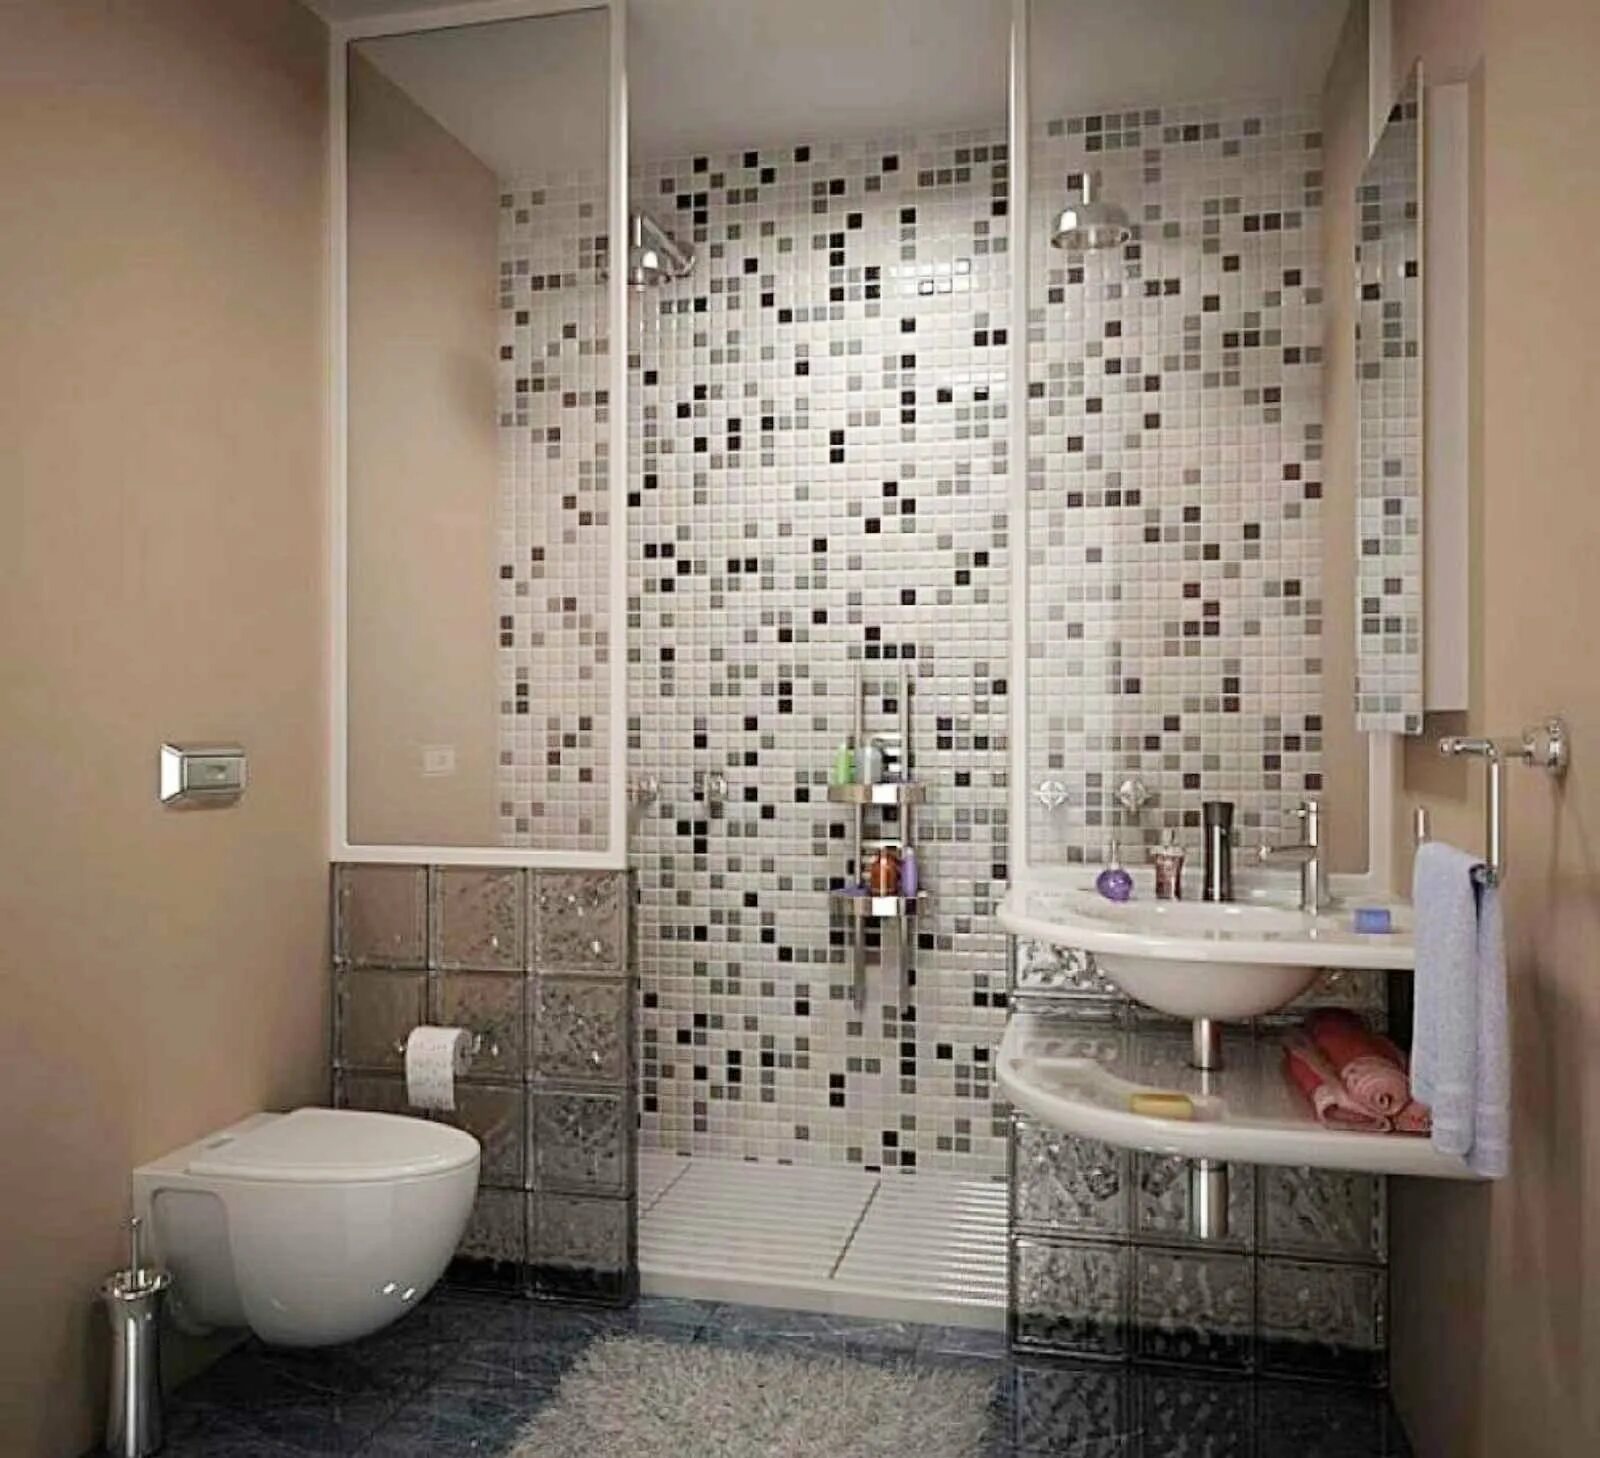 Варианты душевых комнат. Мозаика для ванной. Плитка для ванной комнаты мозайка. Мозаика в интерьере ванной комнаты. Отделка ванной мозаикой.